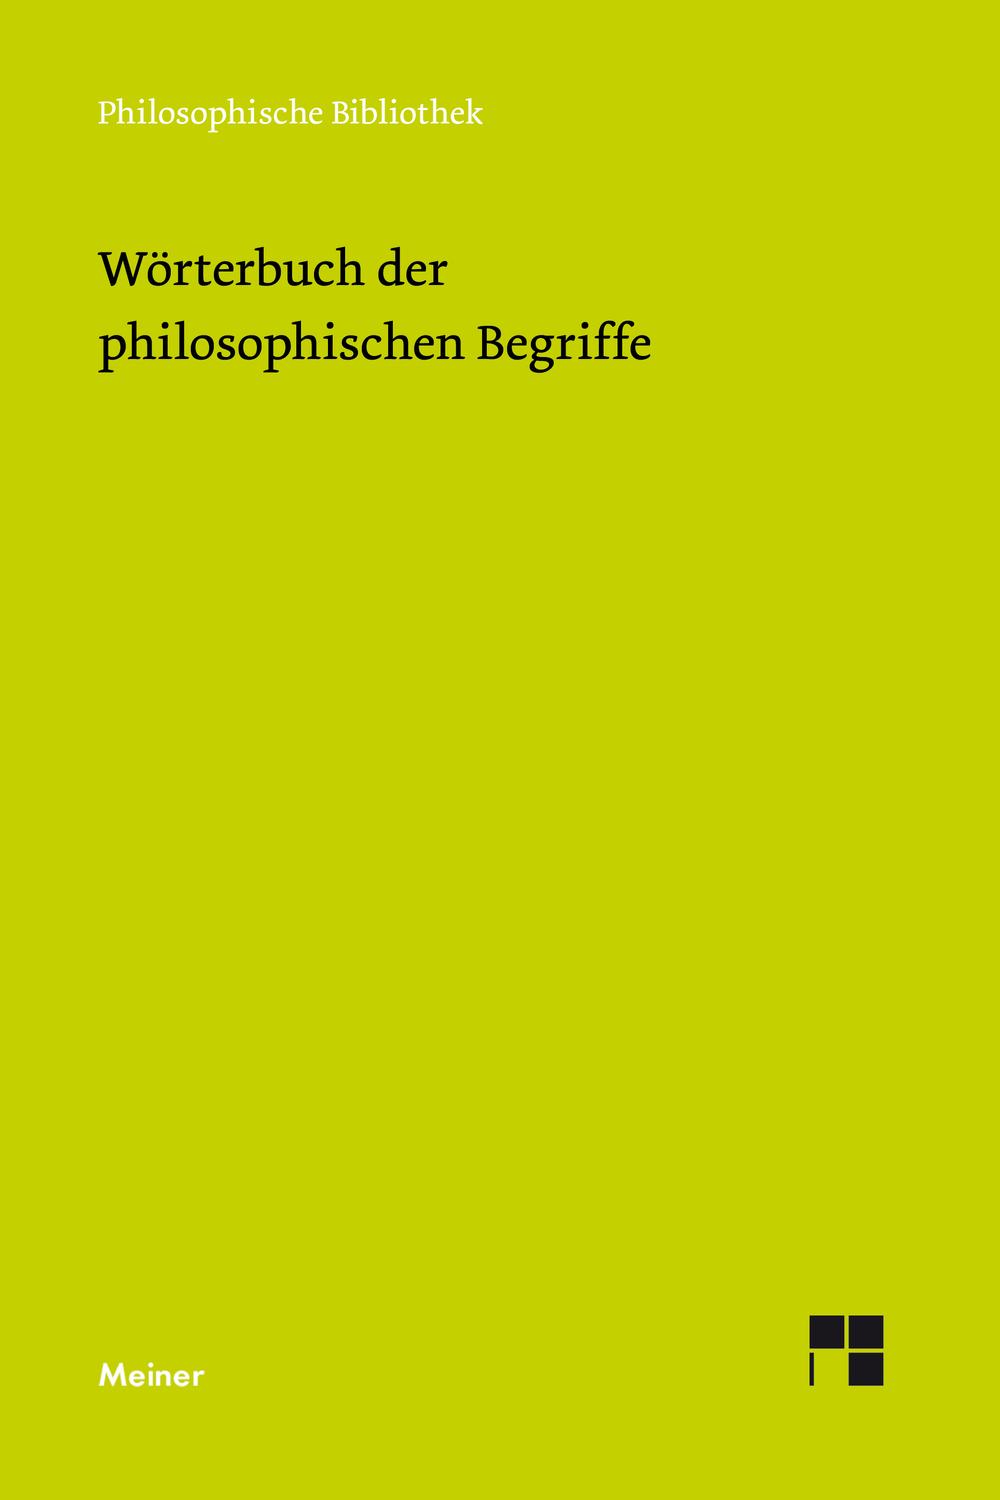 Wörterbuch der philosophischen Begriffe - Arnim Regenbogen, Uwe Meyer